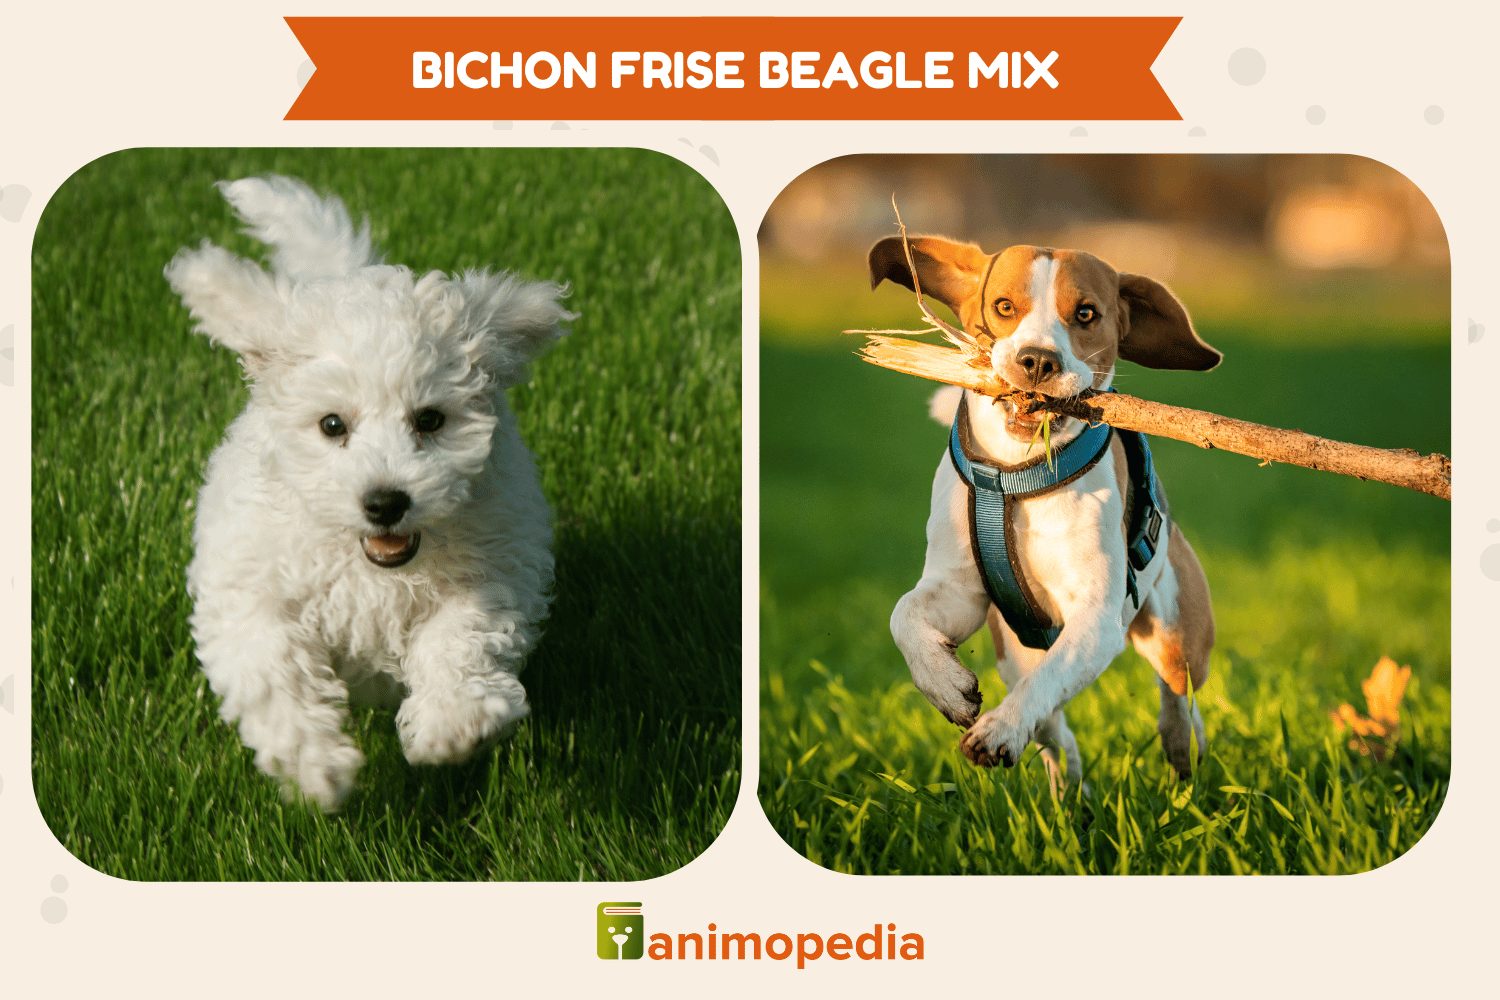 bichon frise beagle mix